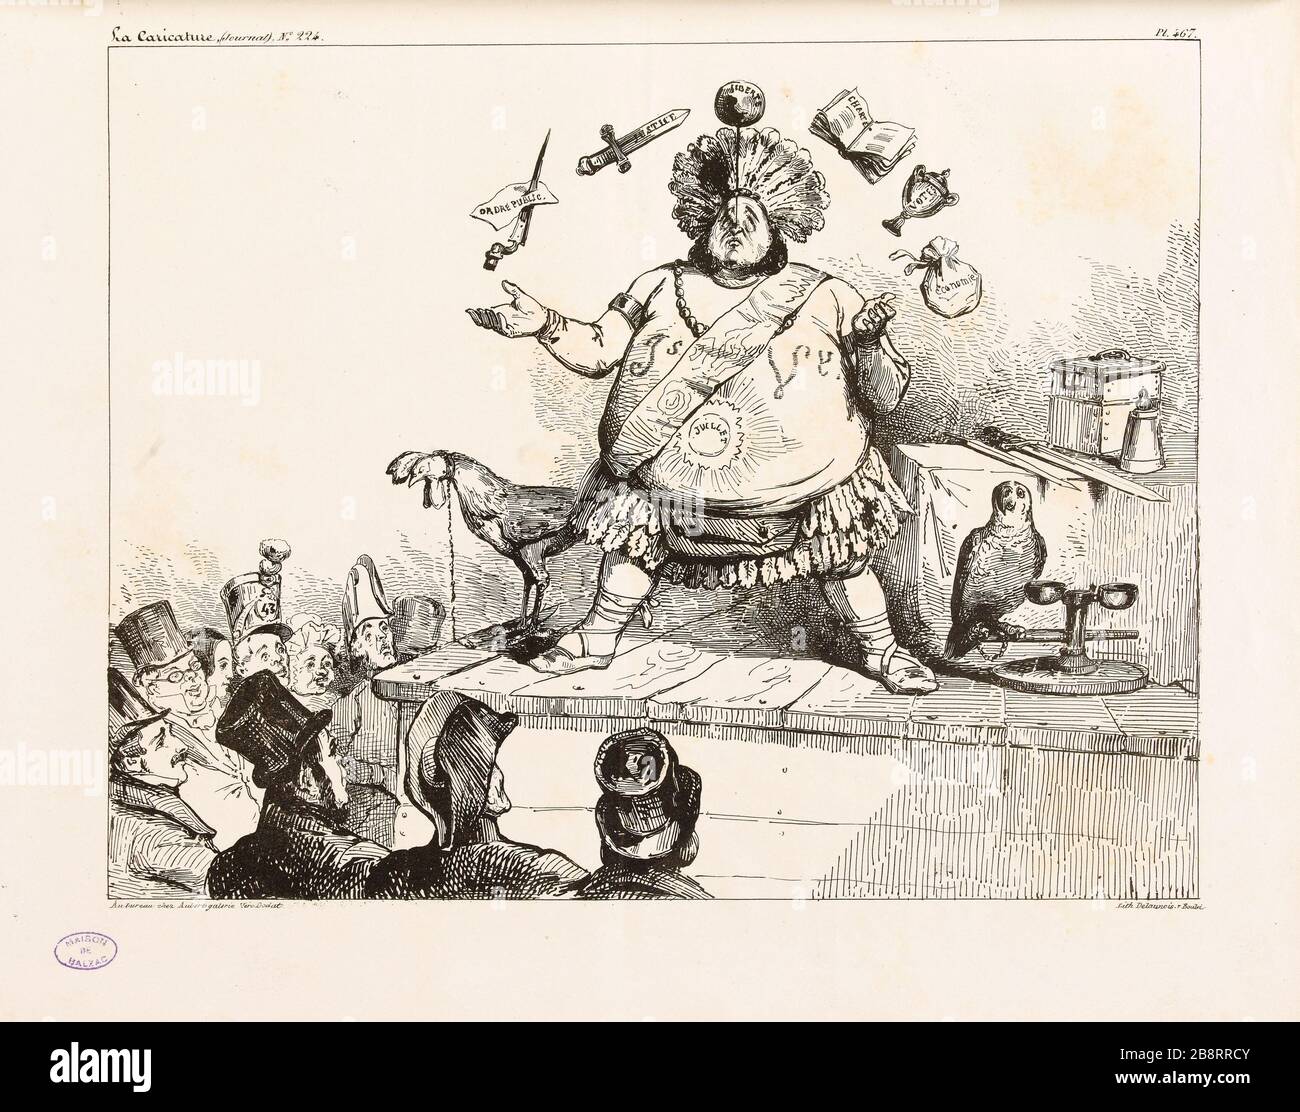 [untitled] Jean Ignace Isidore Gérard Grandville (1803-1847). Planche parue dans 'La Caricature' du 19 février 1835, sans titre. Lithographie. Paris, Maison de Balzac. Stock Photo